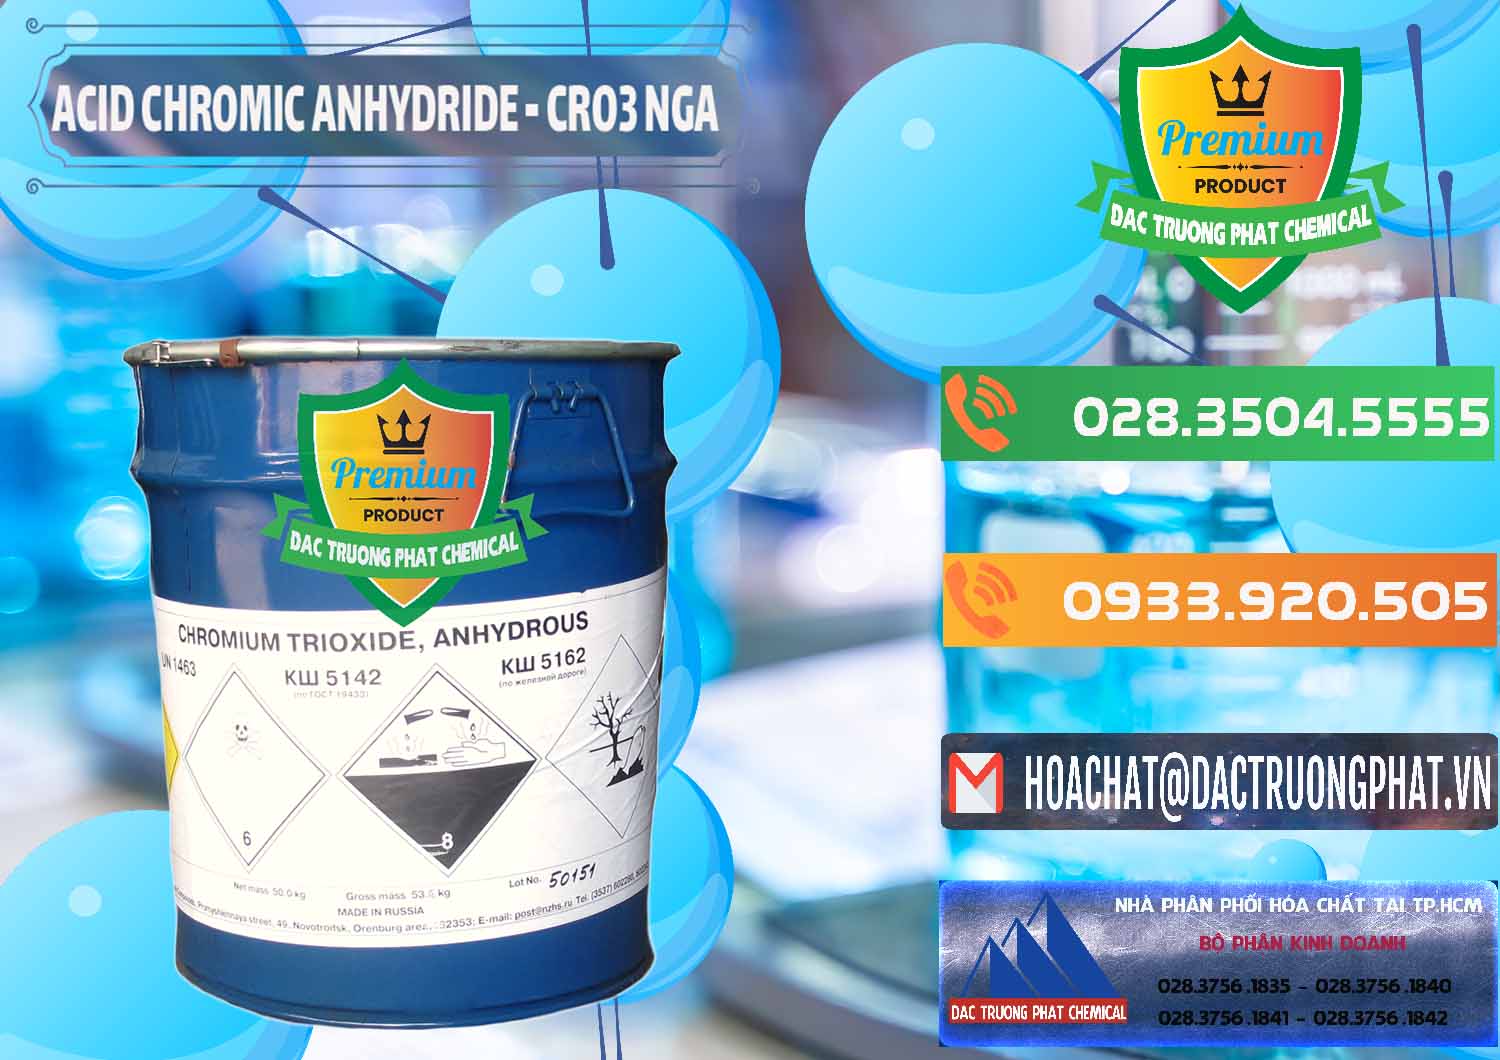 Nơi nhập khẩu - bán Acid Chromic Anhydride - Cromic CRO3 Nga Russia - 0006 - Công ty cung cấp & kinh doanh hóa chất tại TP.HCM - hoachatxulynuoc.com.vn